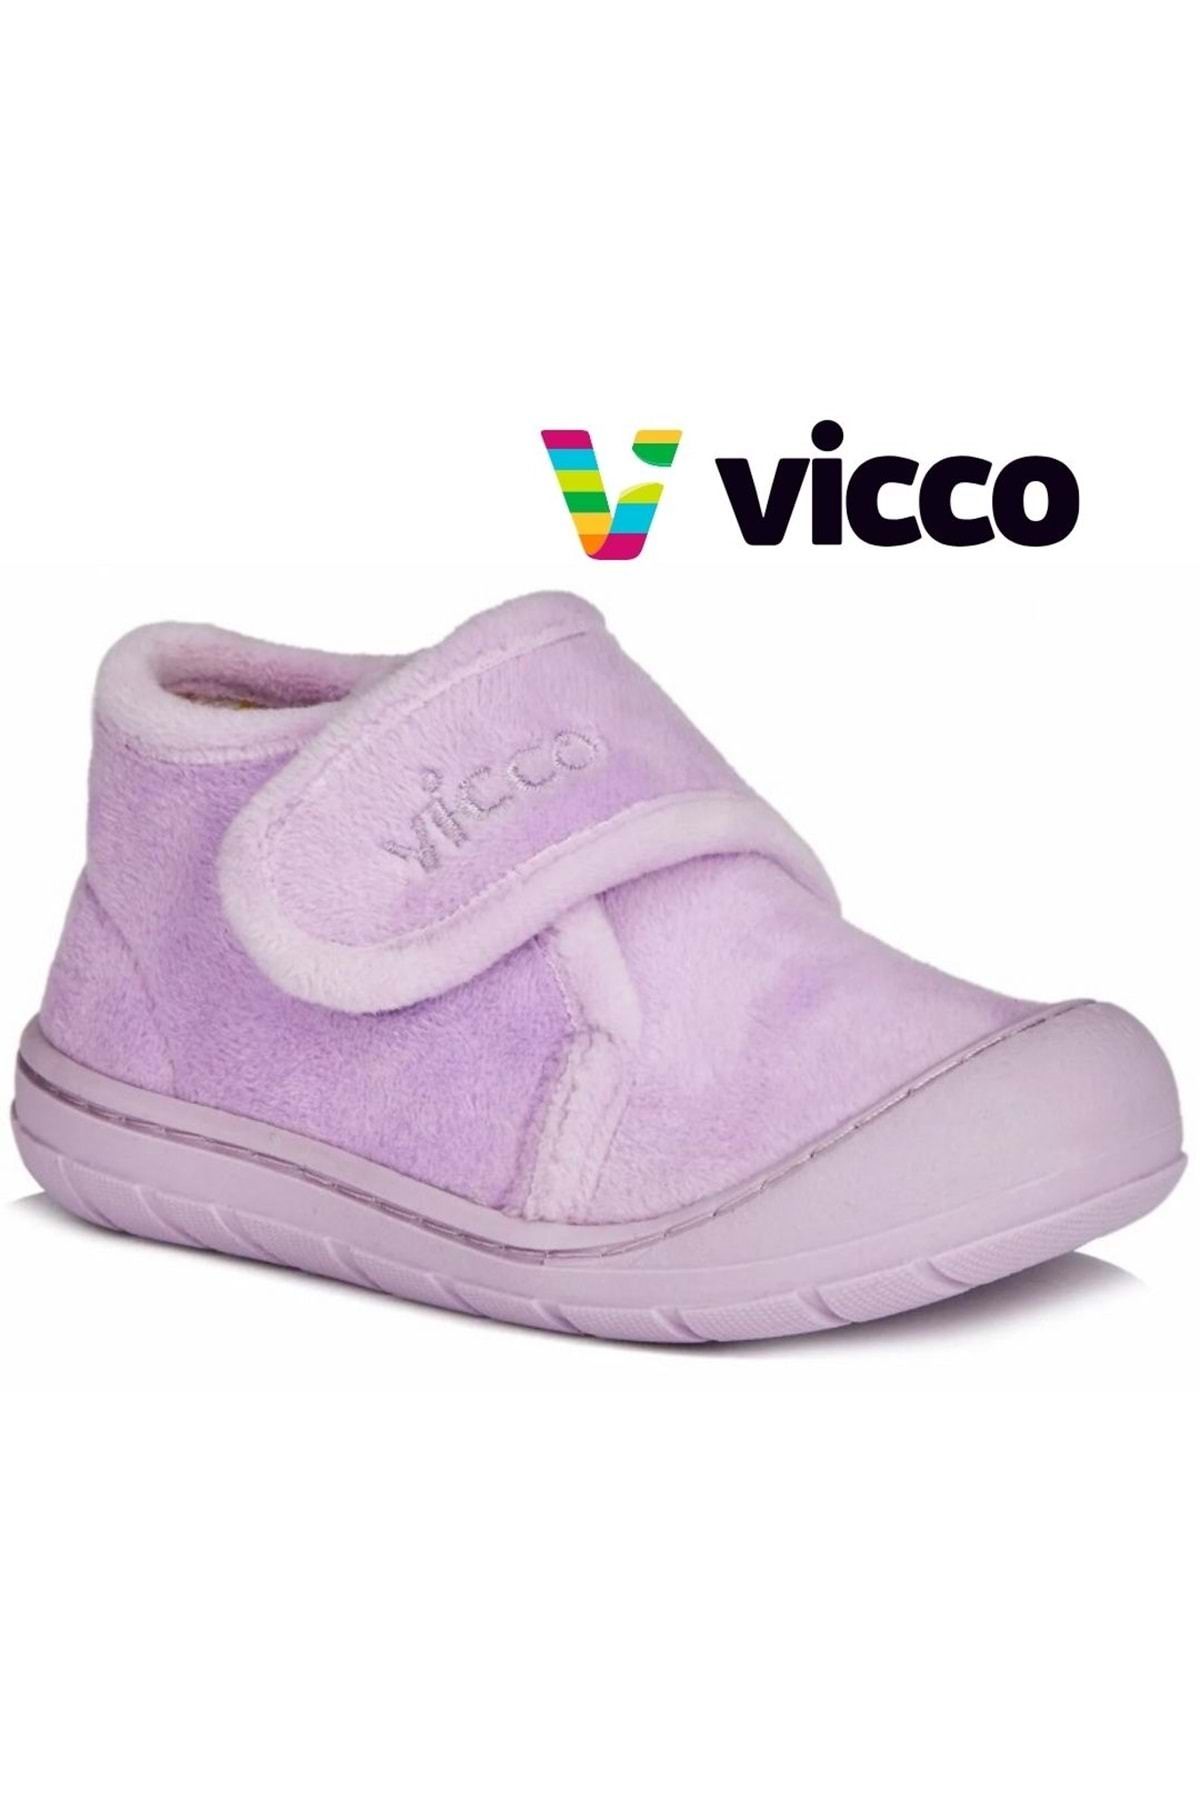 Vicco Color Ilk Adım Bebek Ortopedik Çocuk Panduf Spor Ayakkabı Lila